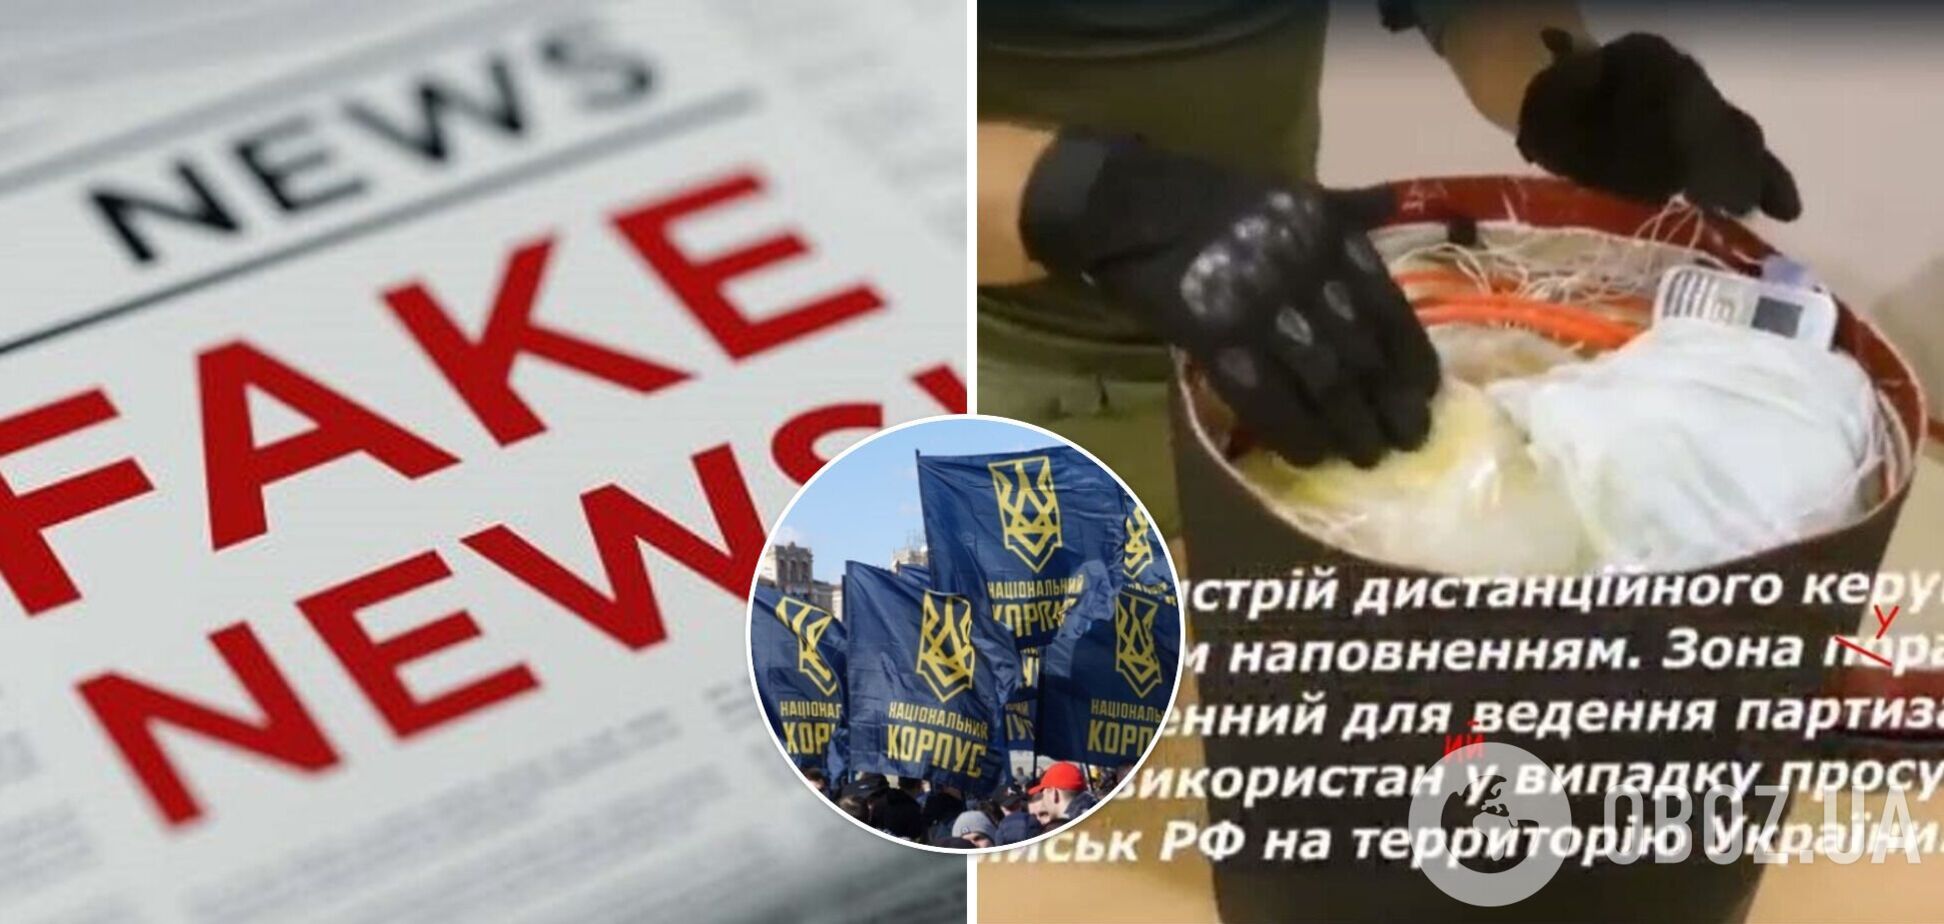 Пропагандисты РФ запустили фейк об производстве 'Нацкорпусом' 'радиоактивной бомбы'